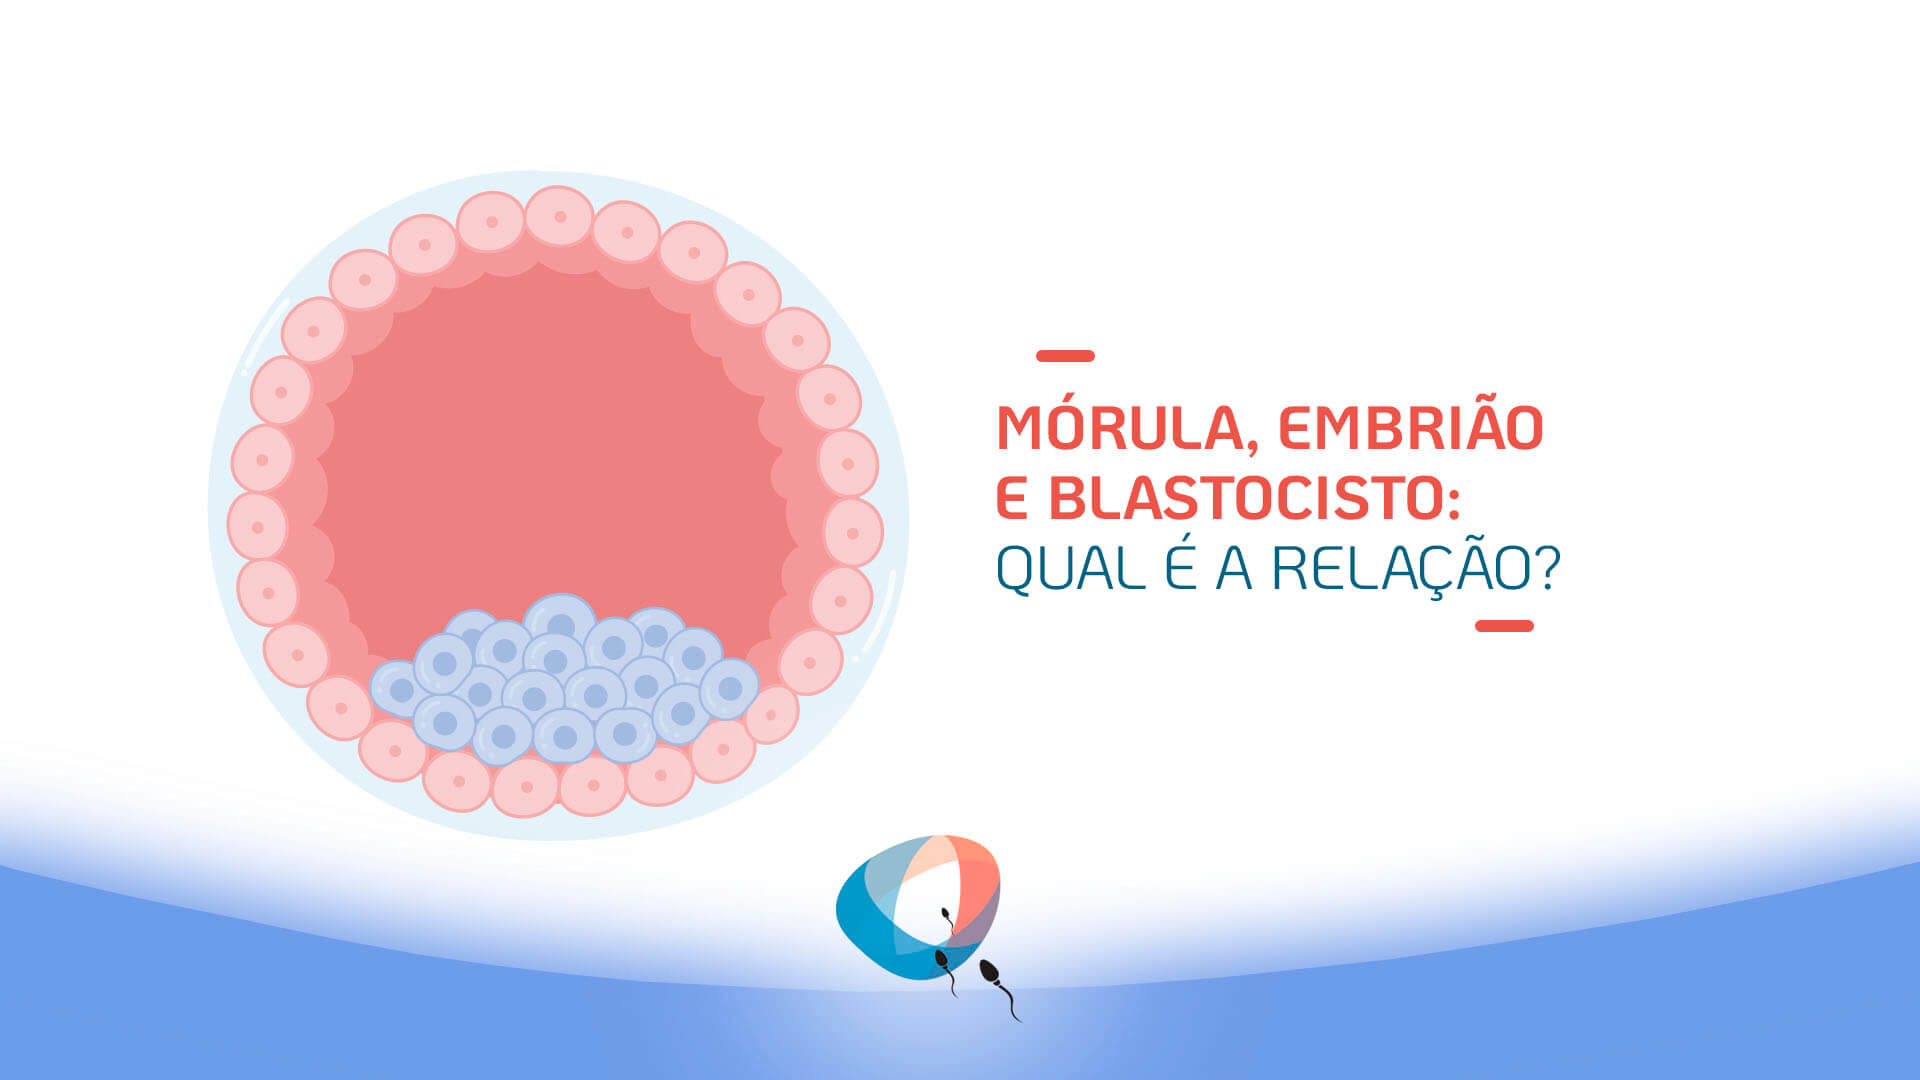 Mórula, embrião e blastocisto: qual é a relação?